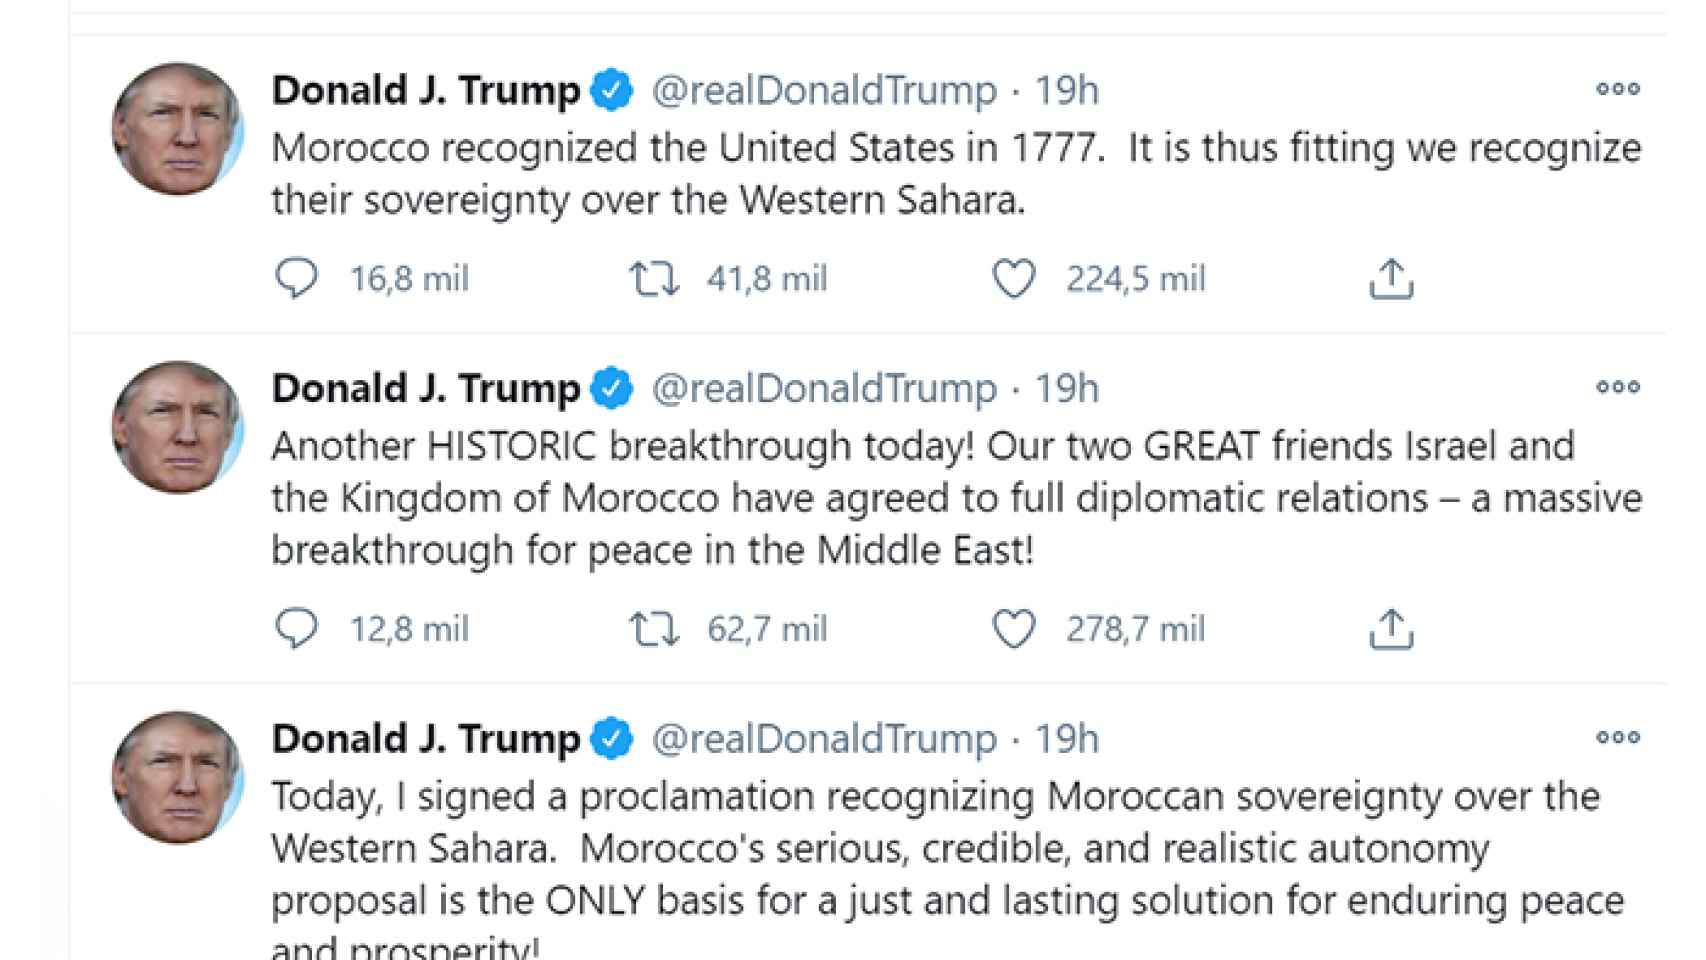 El expresidente de los EEUU, Donald Trump, anuncia que reconoce la soberanía de Marruecos sobre el Sáhara Occidental, en unos tuits de diciembre de 2010.